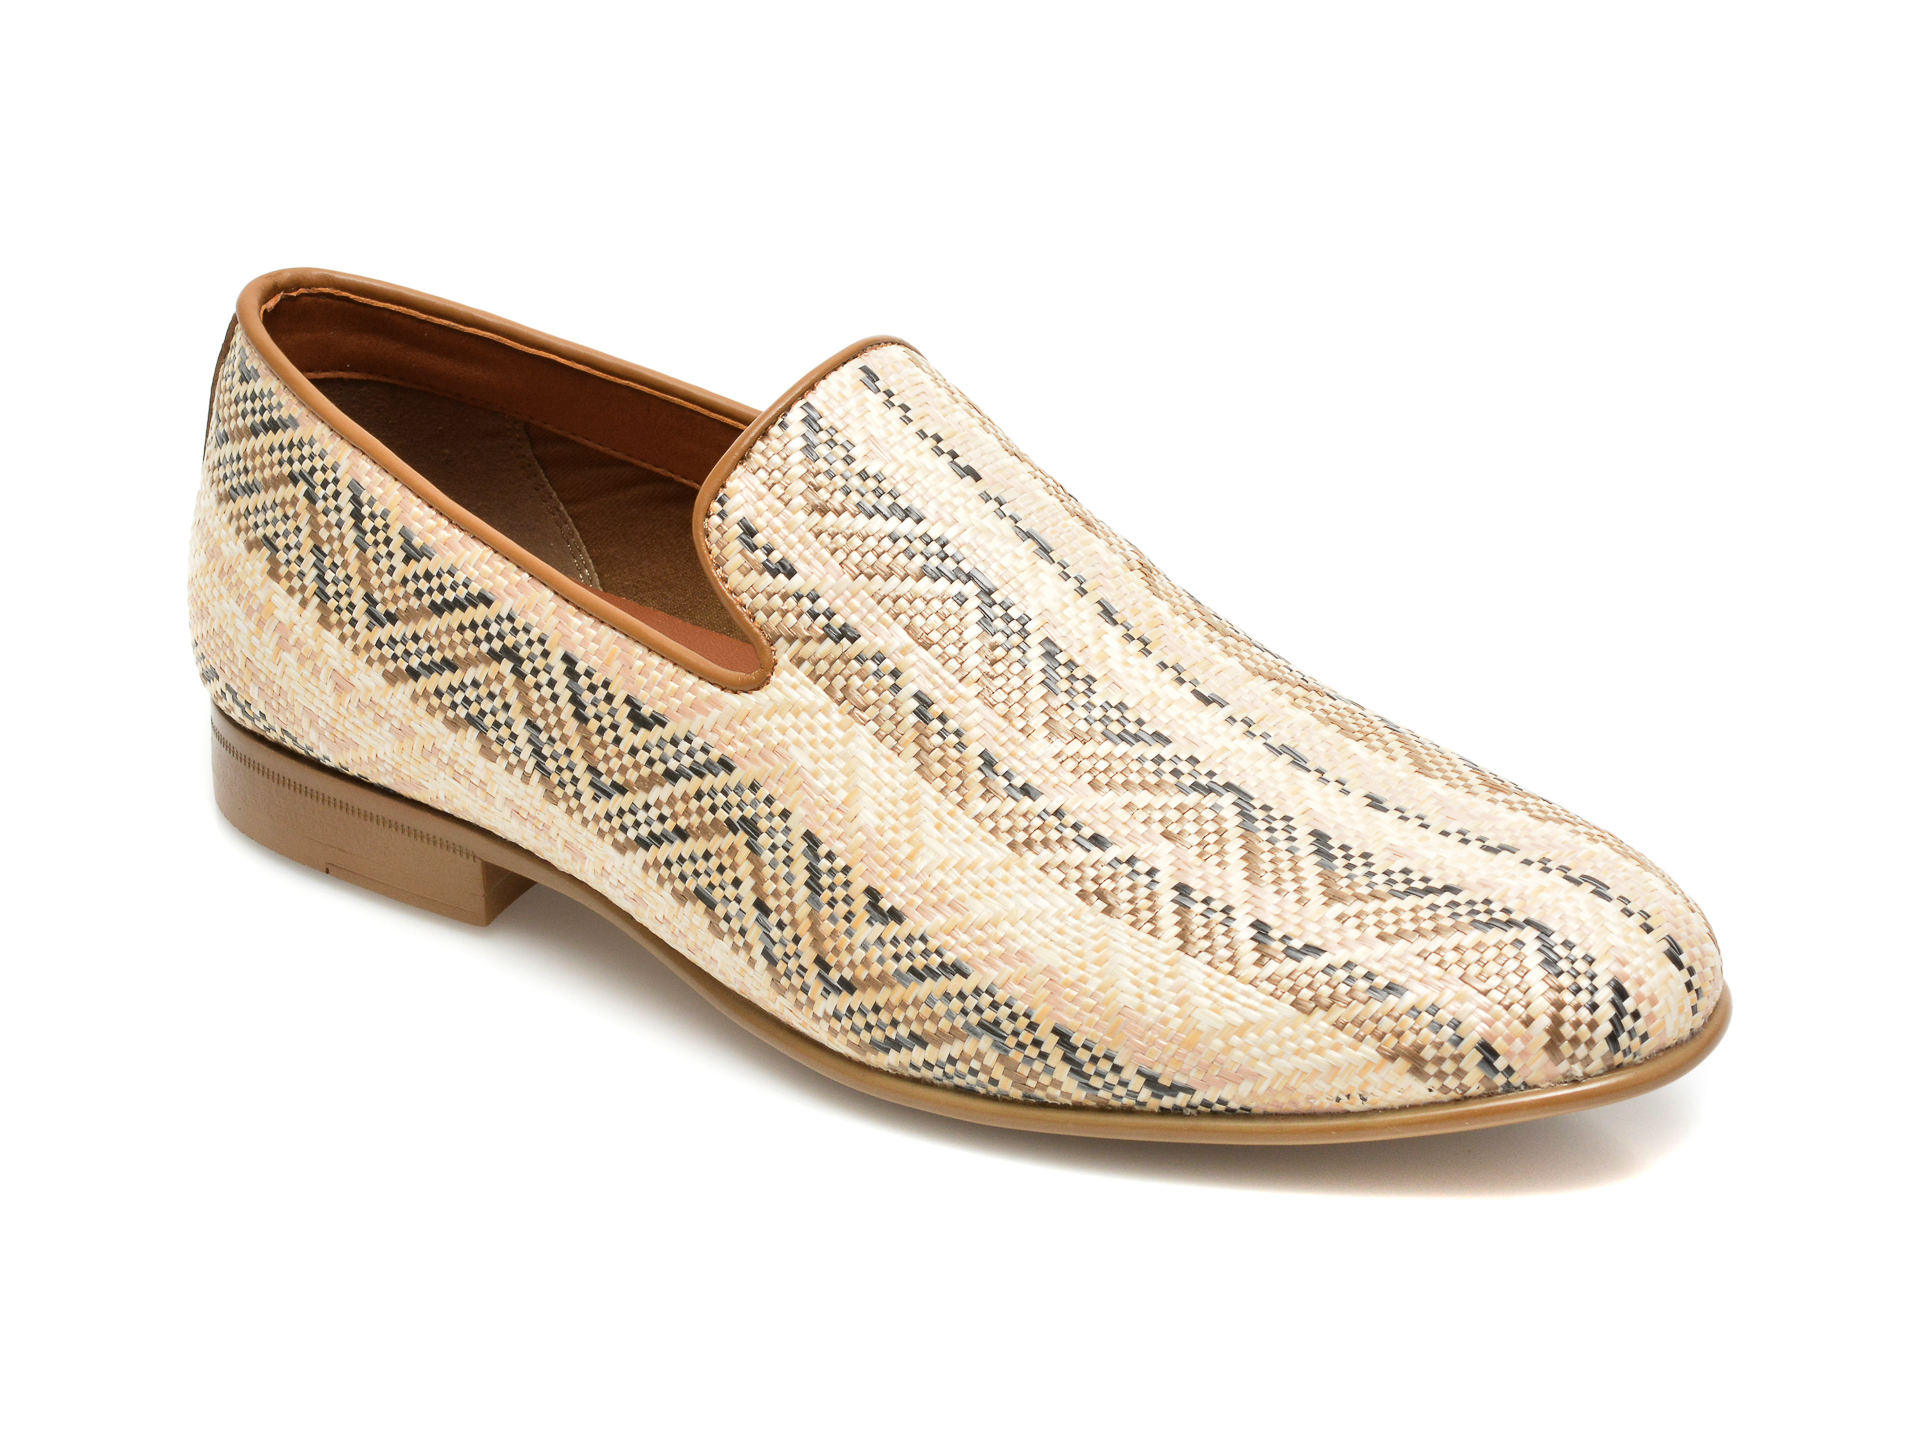 Pantofi ALDO bej, Dahlby271, din material textil ALDO imagine 2022